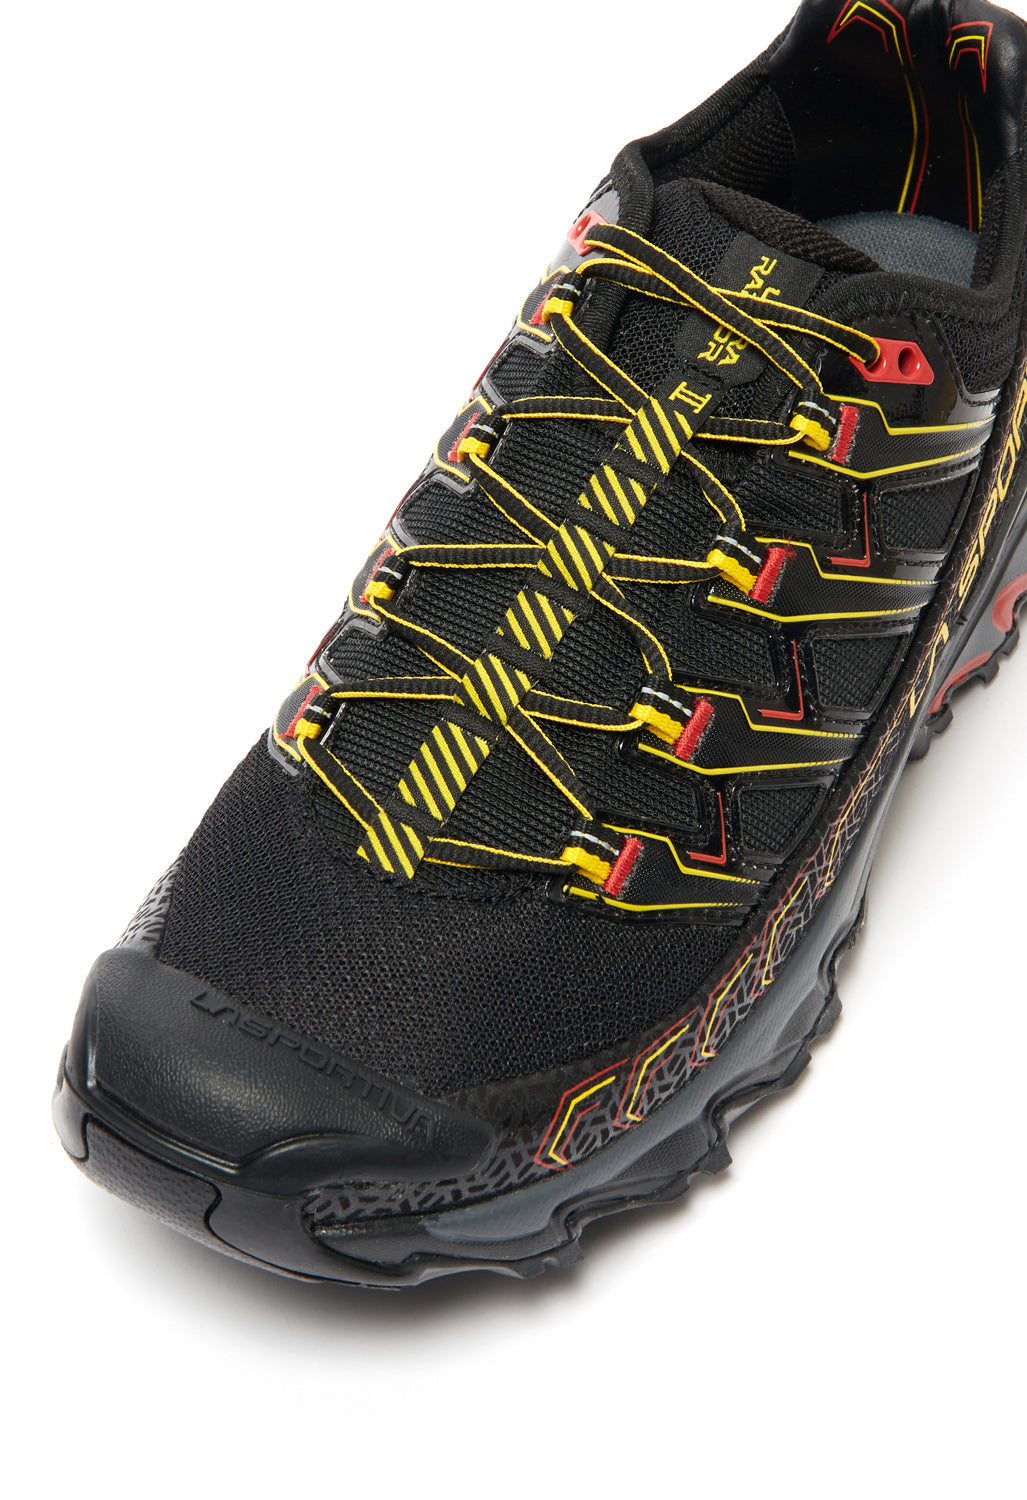 La Sportiva Ultra Raptor II Men's Shoes - Black/Yellow